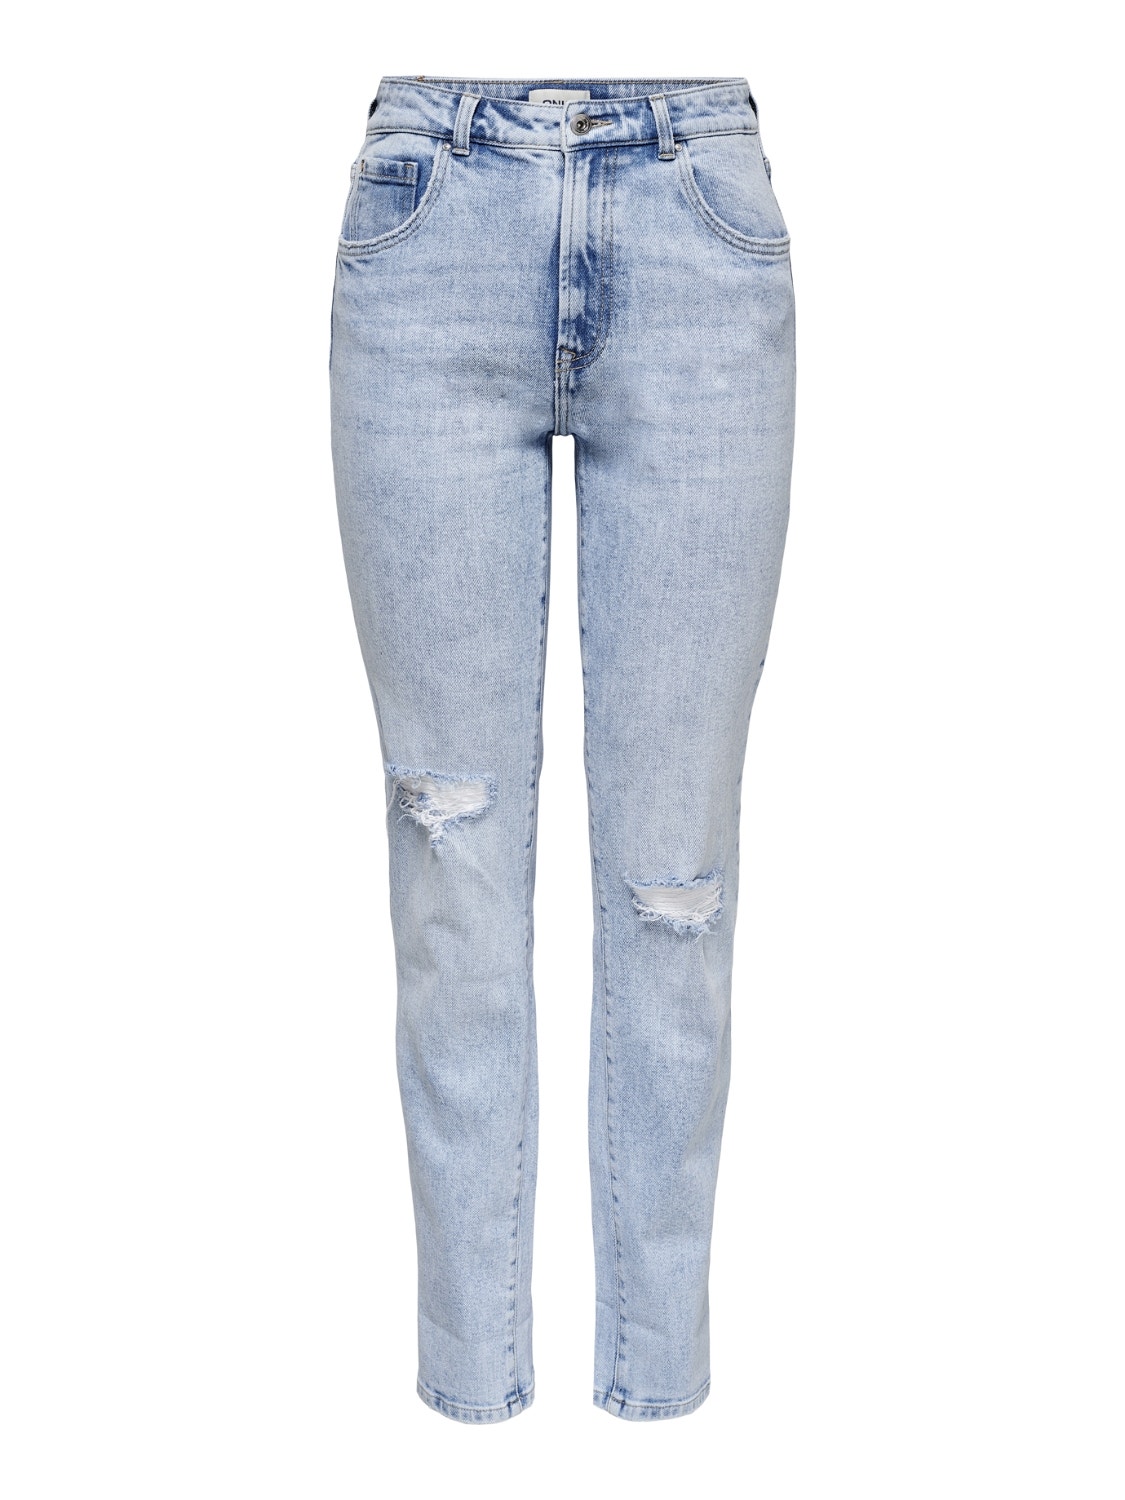 ONLY Jeans Slim Fit Taille haute Ourlé destroy -Light Blue Denim - 15250065